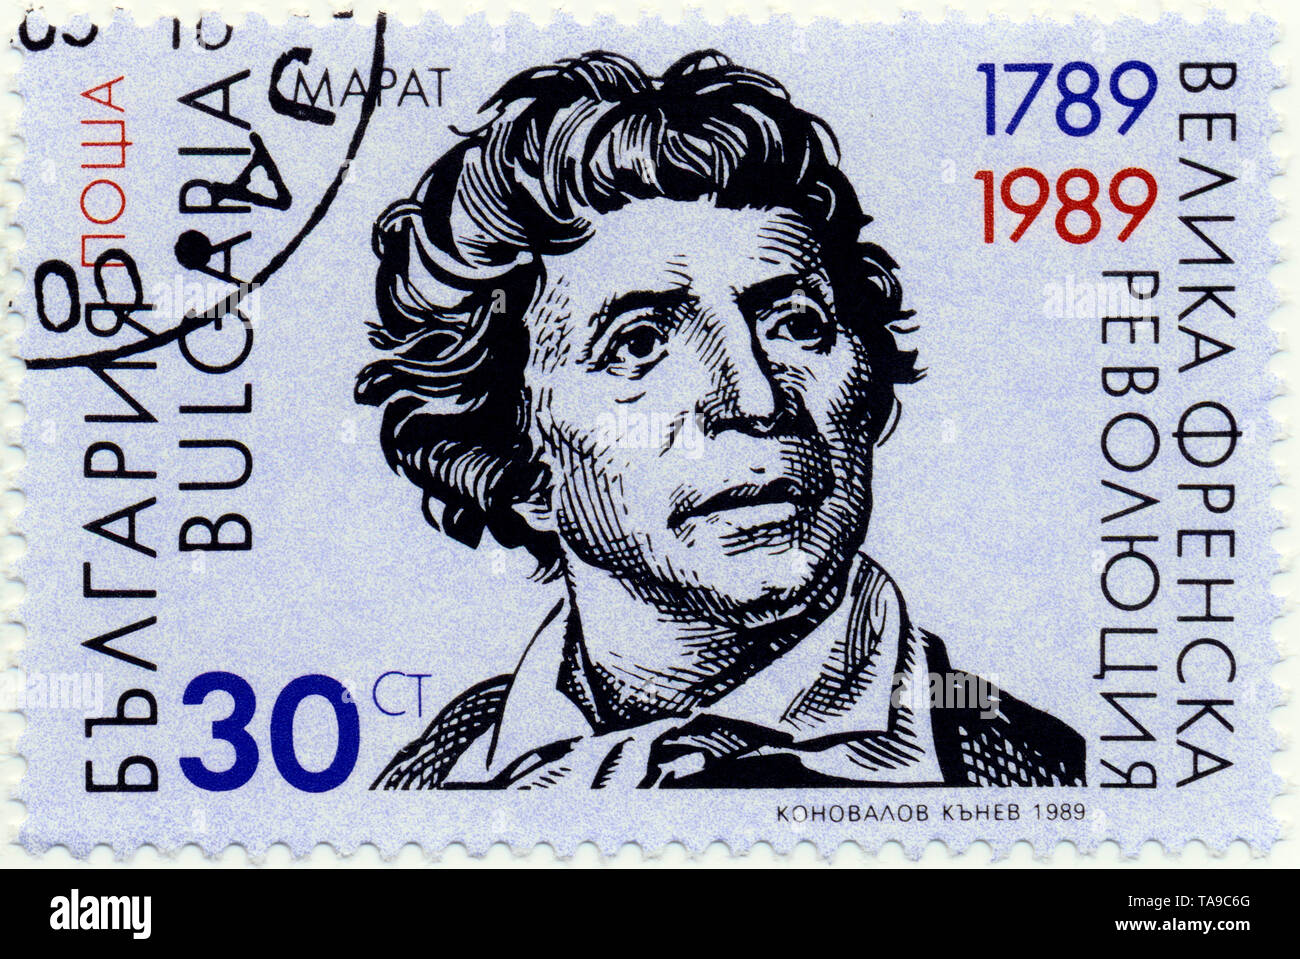 Historic postage stamp from Bulgaria, Historische Briefmarke, Jean Paul Marat; 200 Jahre französische Revolution, 1989, Bulgarien, Europa Stock Photo